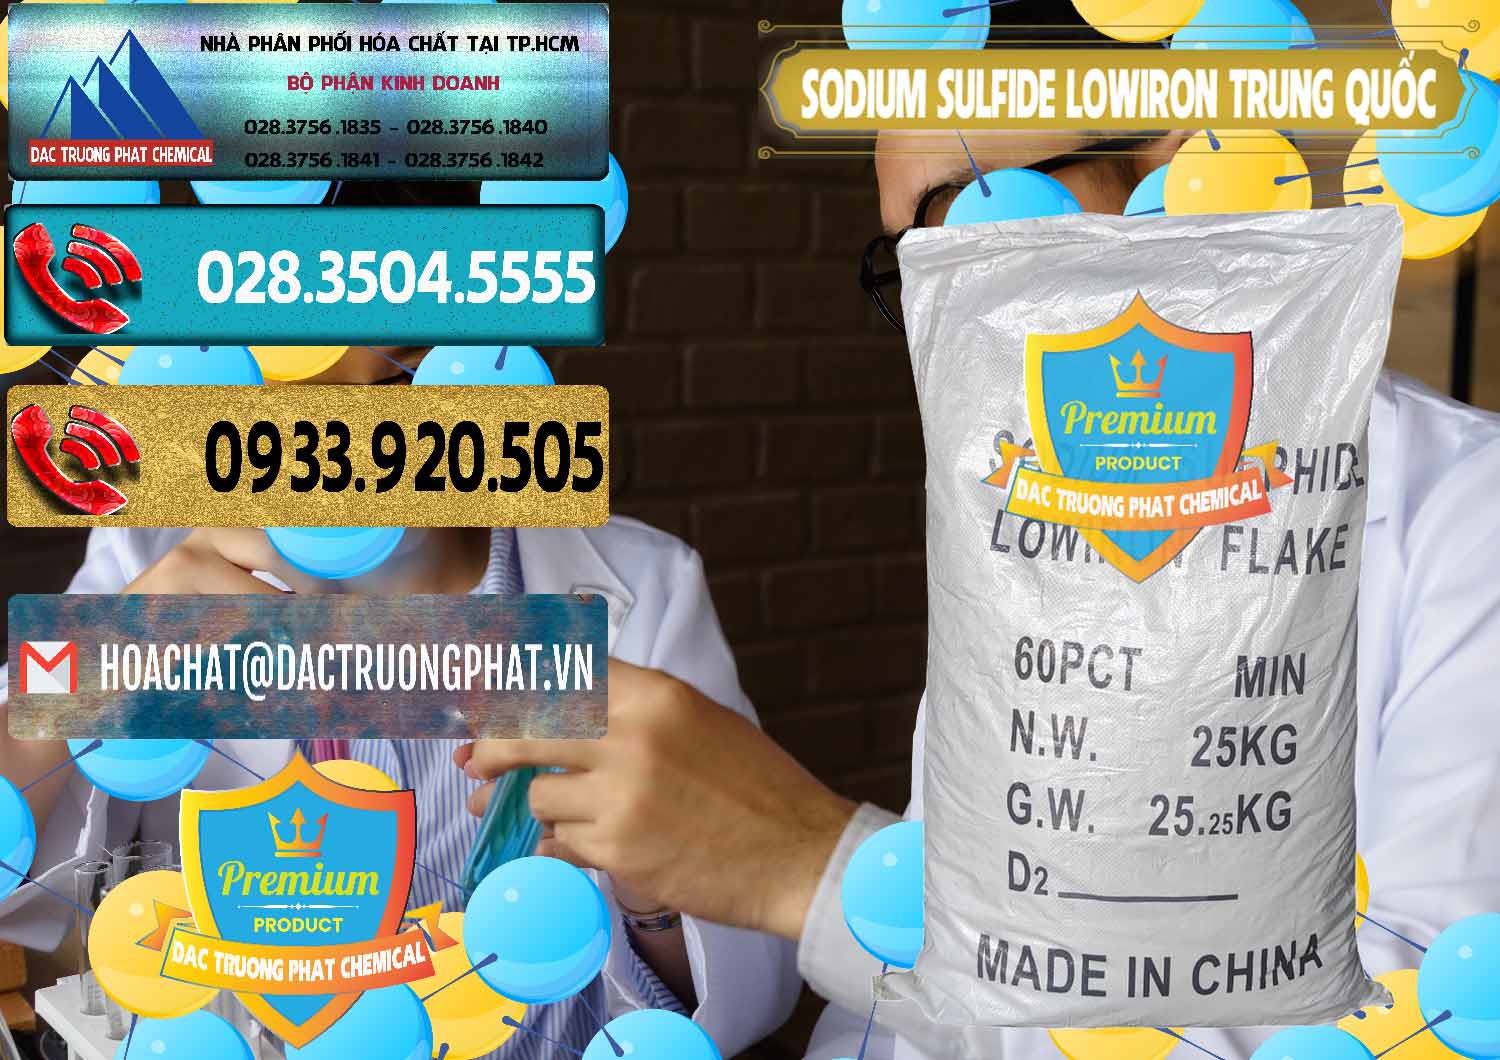 Cty phân phối ( bán ) Sodium Sulfide NA2S – Đá Thối Lowiron Trung Quốc China - 0227 - Cty phân phối _ cung cấp hóa chất tại TP.HCM - hoachatdetnhuom.com